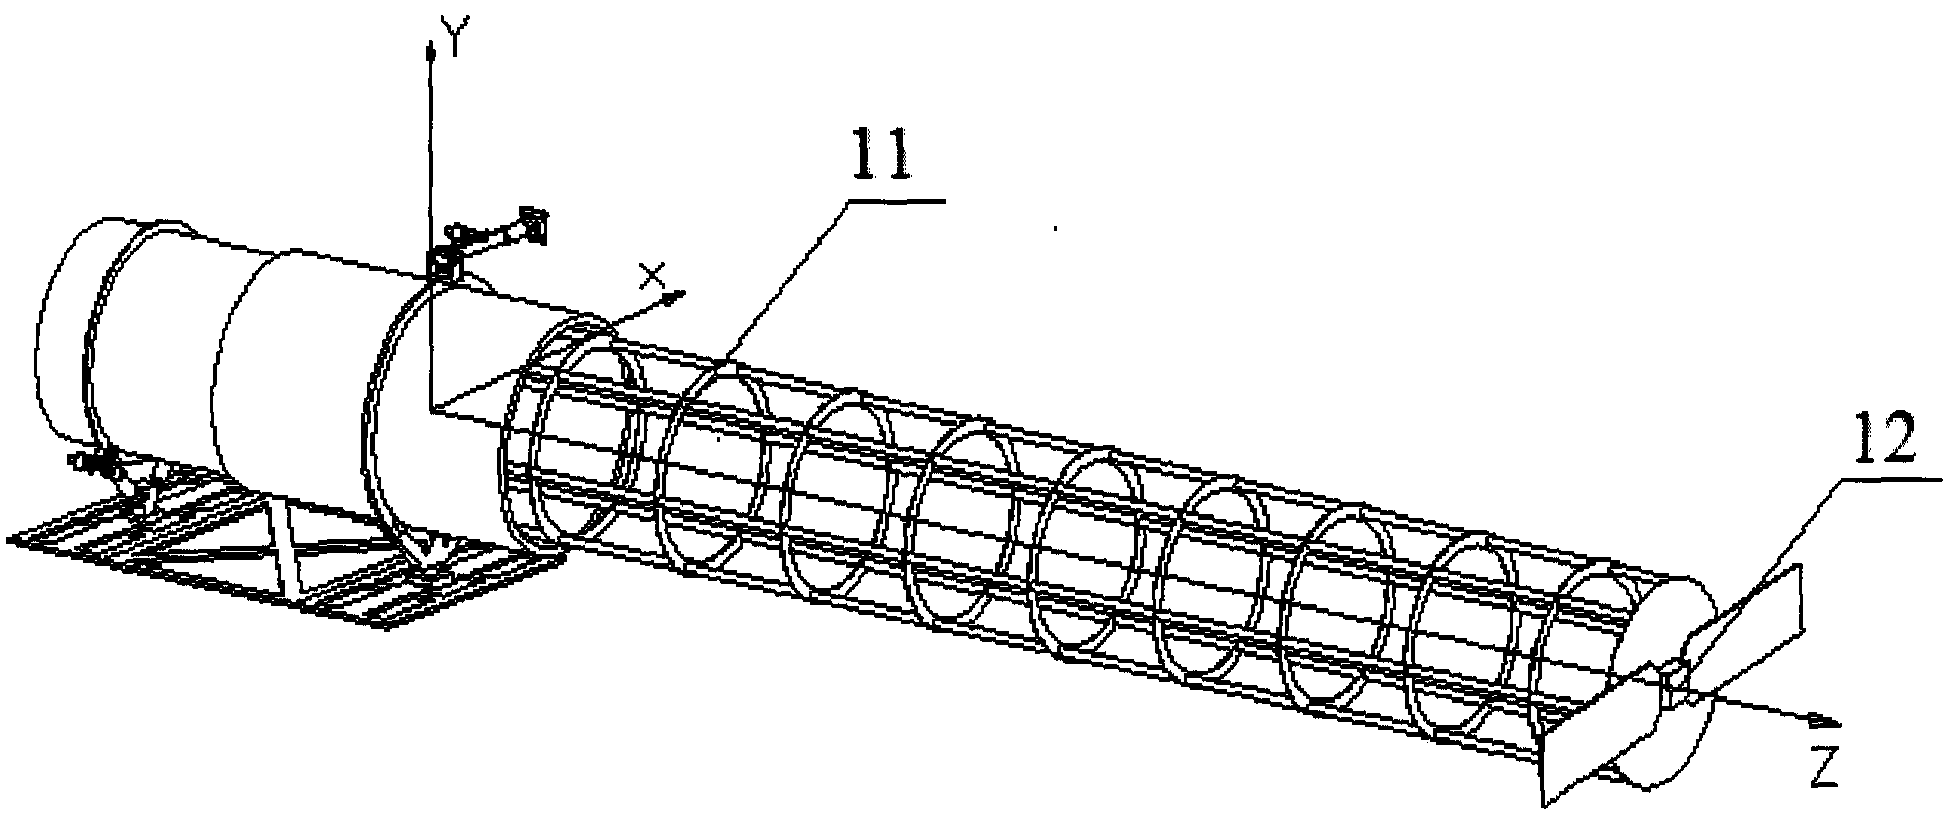 A damping mechanism for deploying an antenna